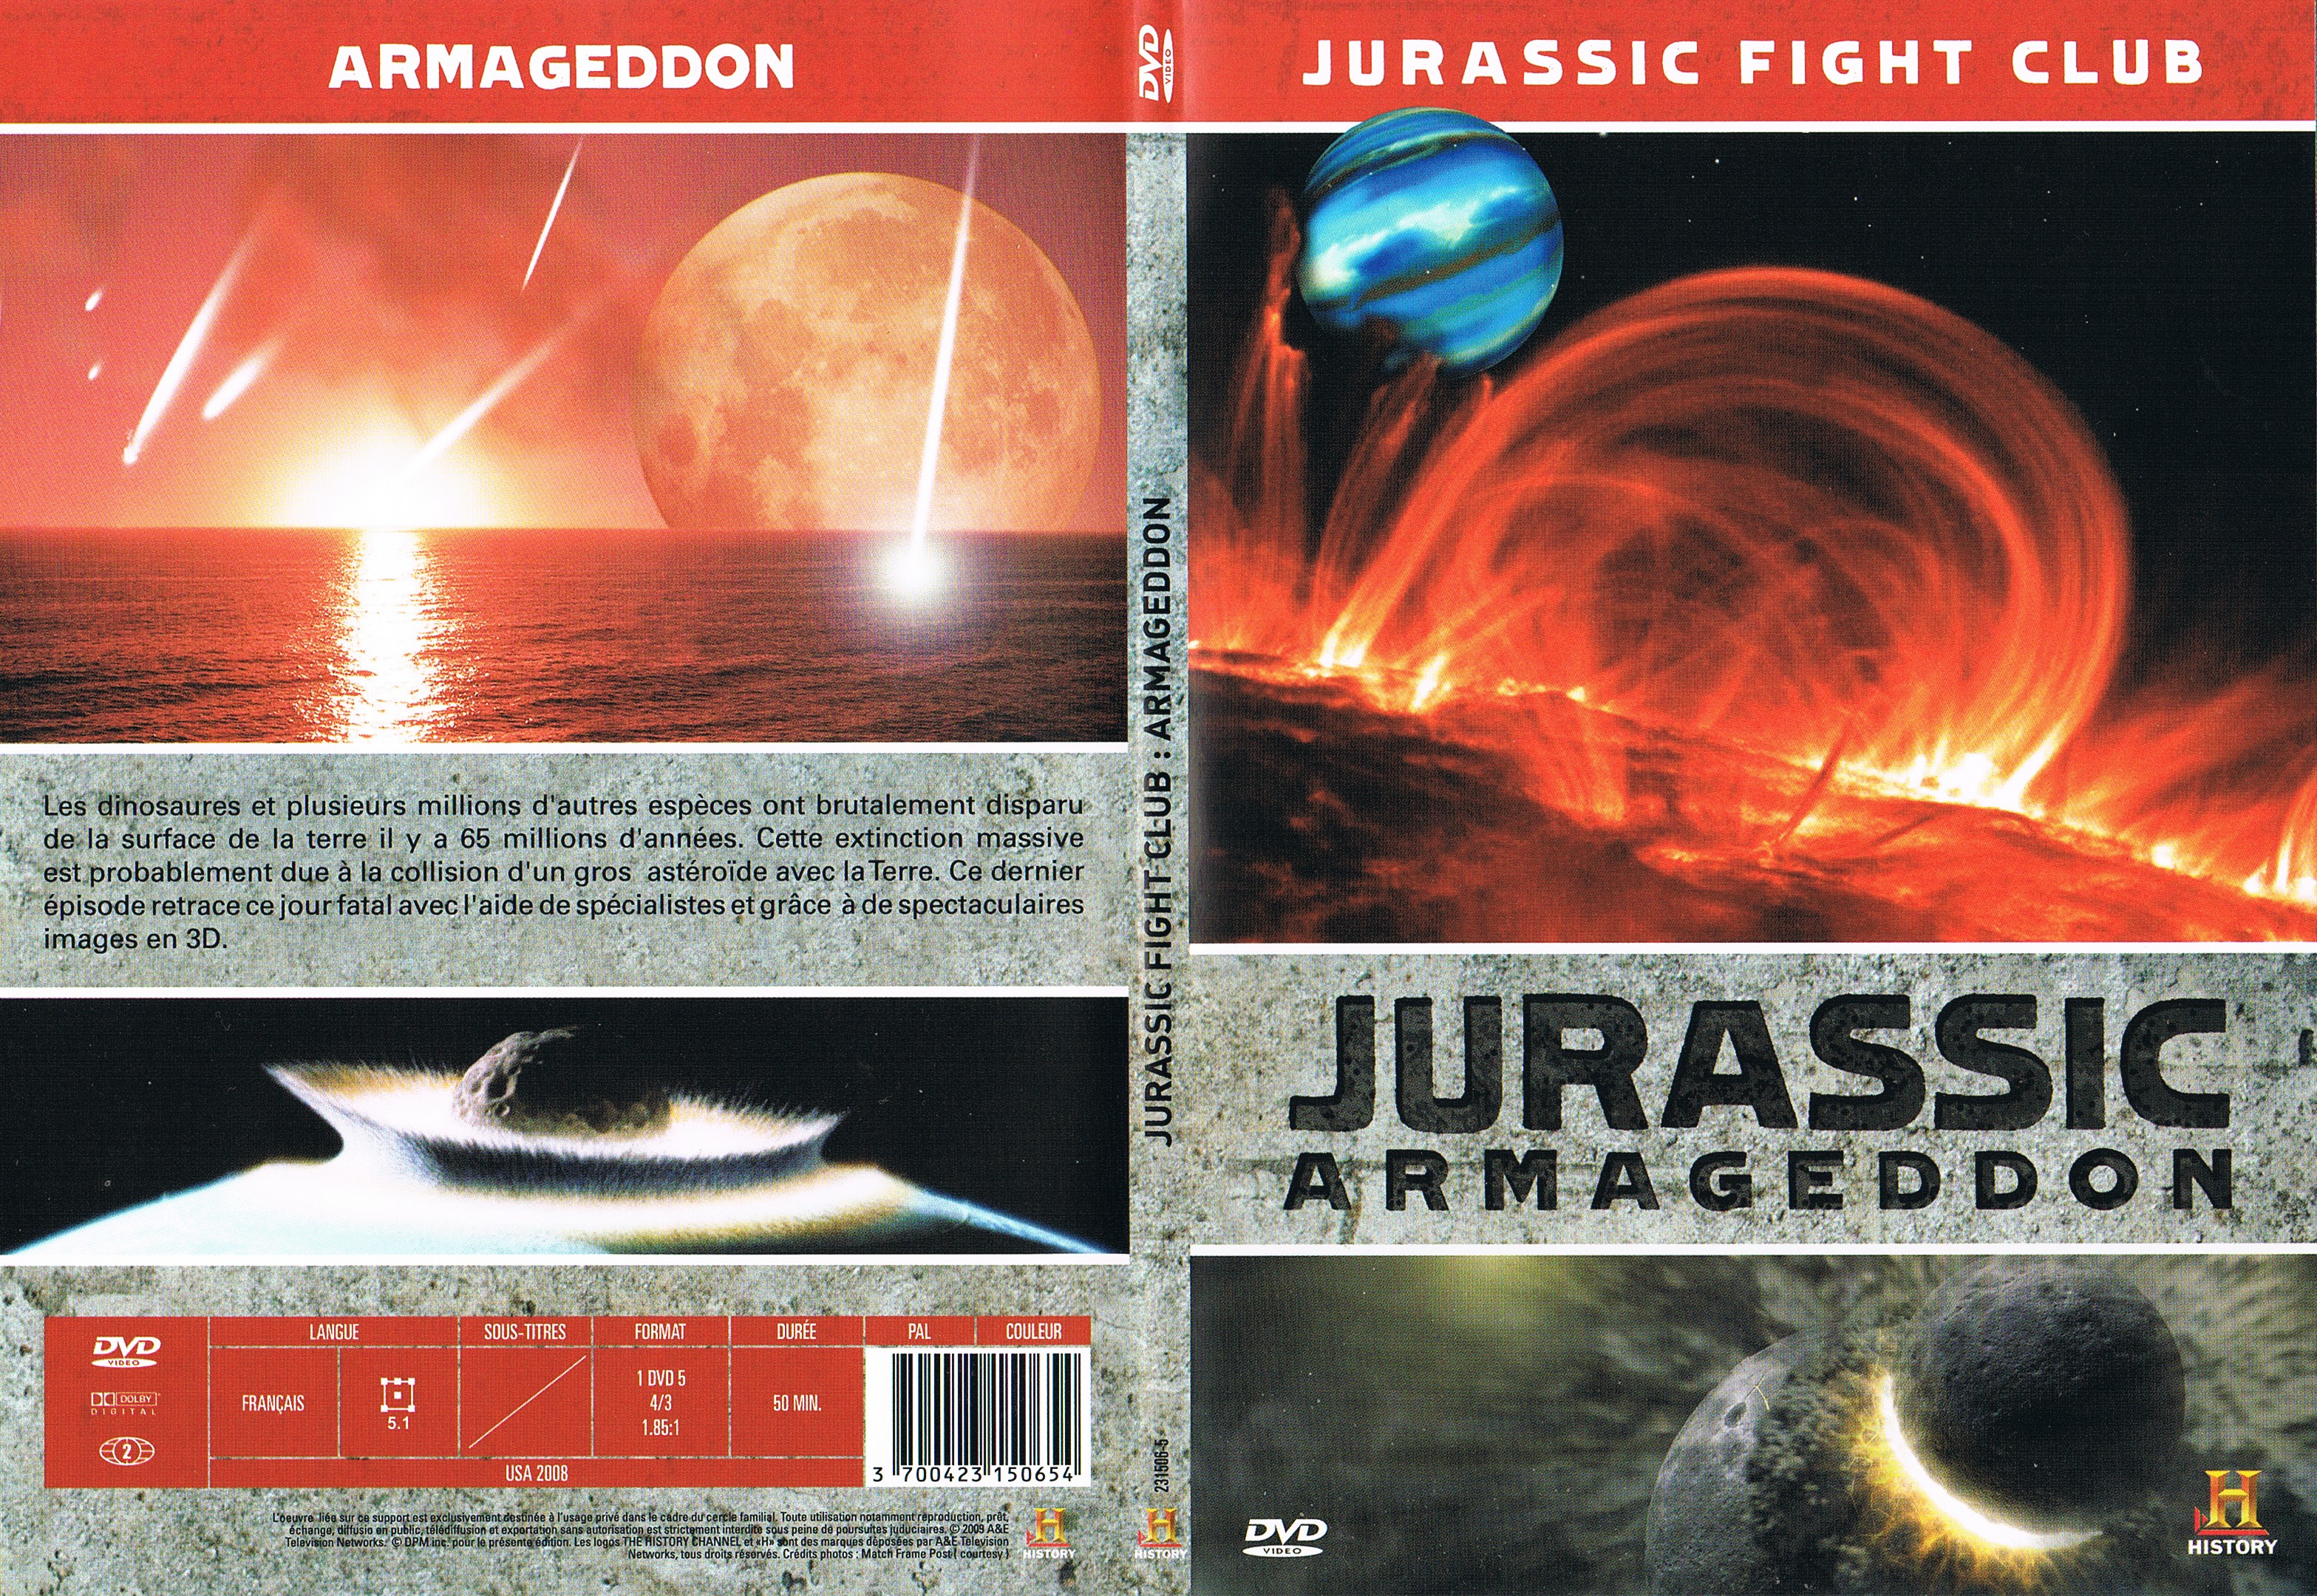 Jaquette DVD Jurassic Fight Club - Armageddon